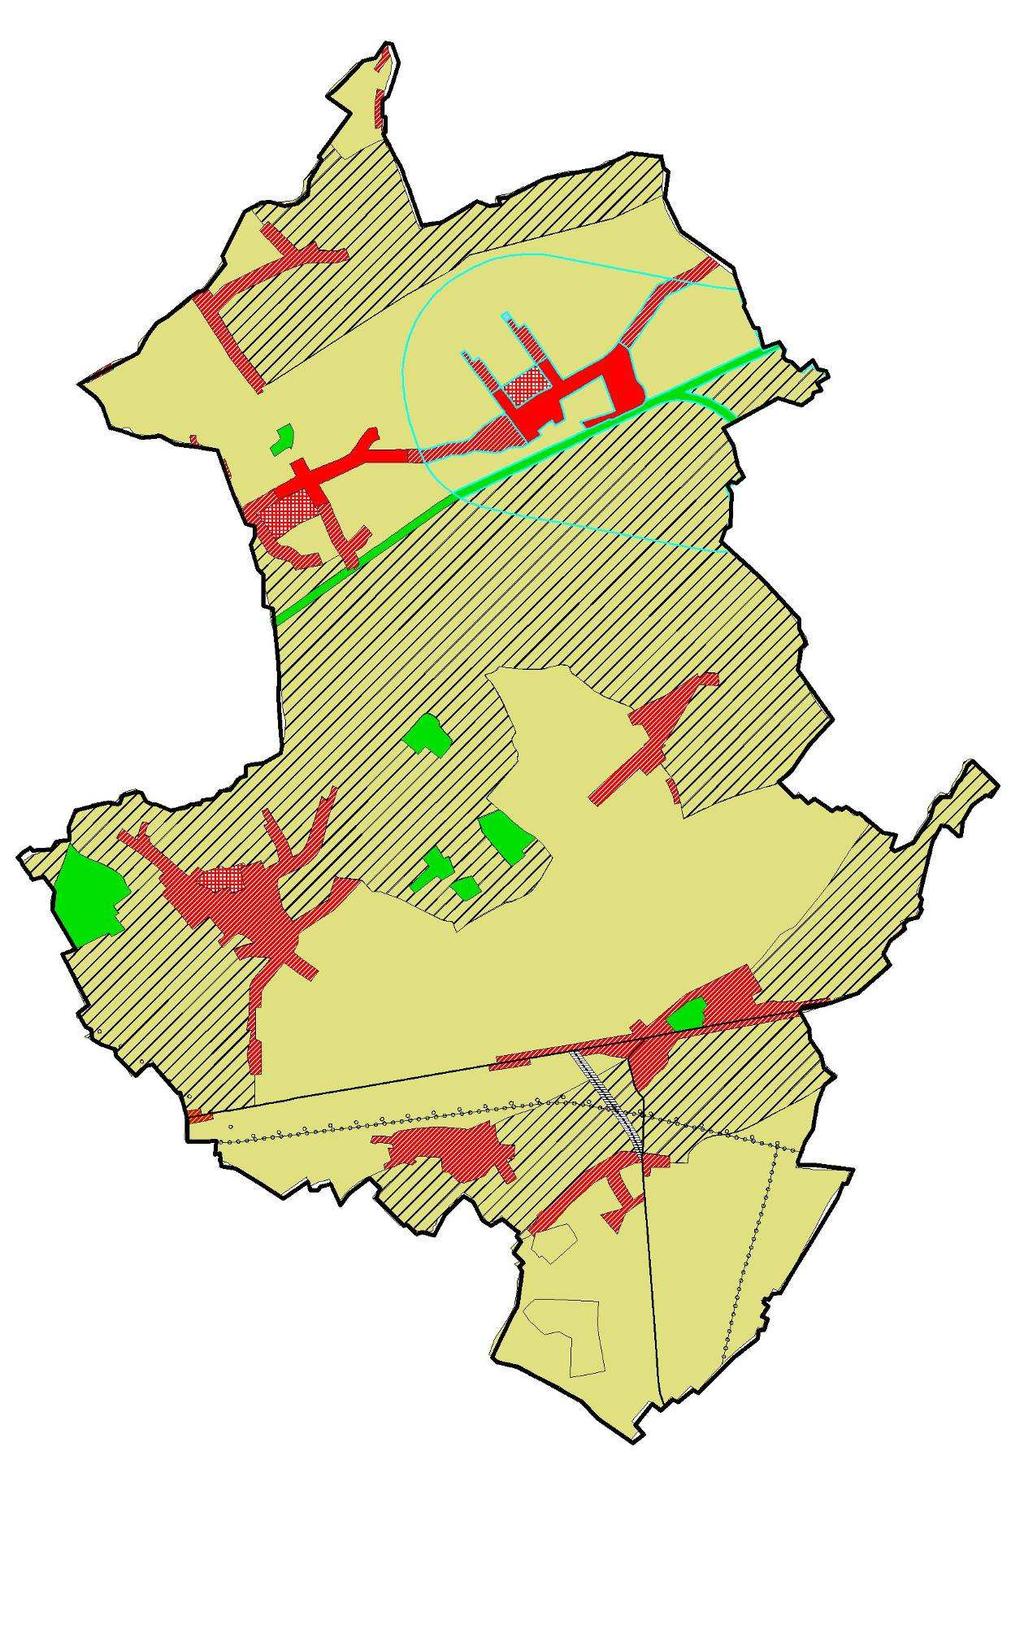 Natuur- of parkgebied (groen) Agrarisch gebied (geel) Waardevol agrarisch gebied (geel met zwarte arcering) Woongebied (rood)